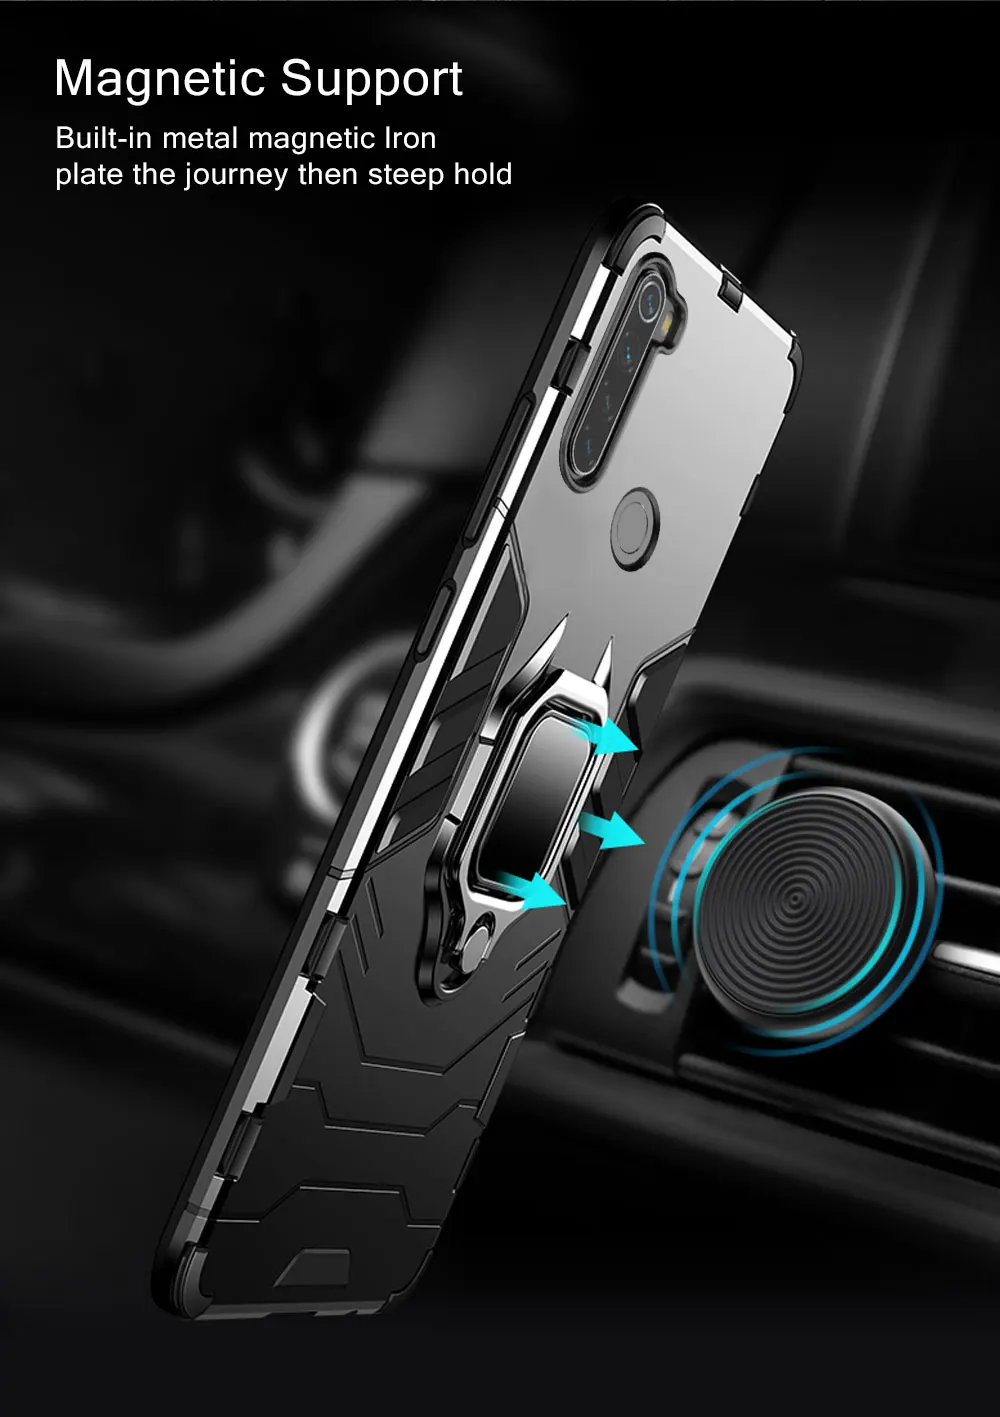 Чехол для Redmi Note 8 T, чехол, магнитный автомобильный держатель для телефона, чехол-кольцо для Xiaomi Redmi Note 8 T 8 T, чехол-броня, матовый чехол